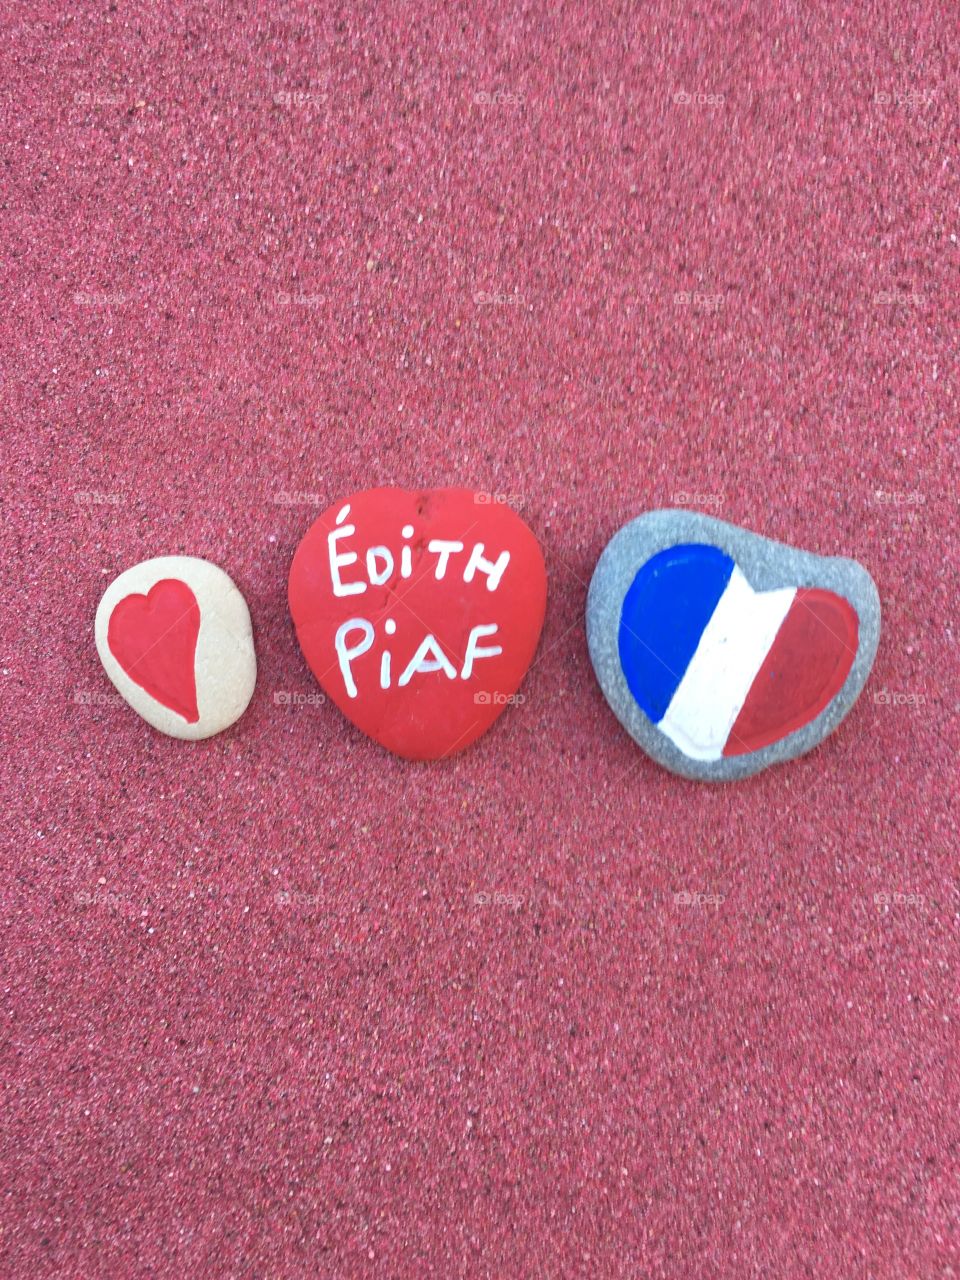 I love Édith Piaf 